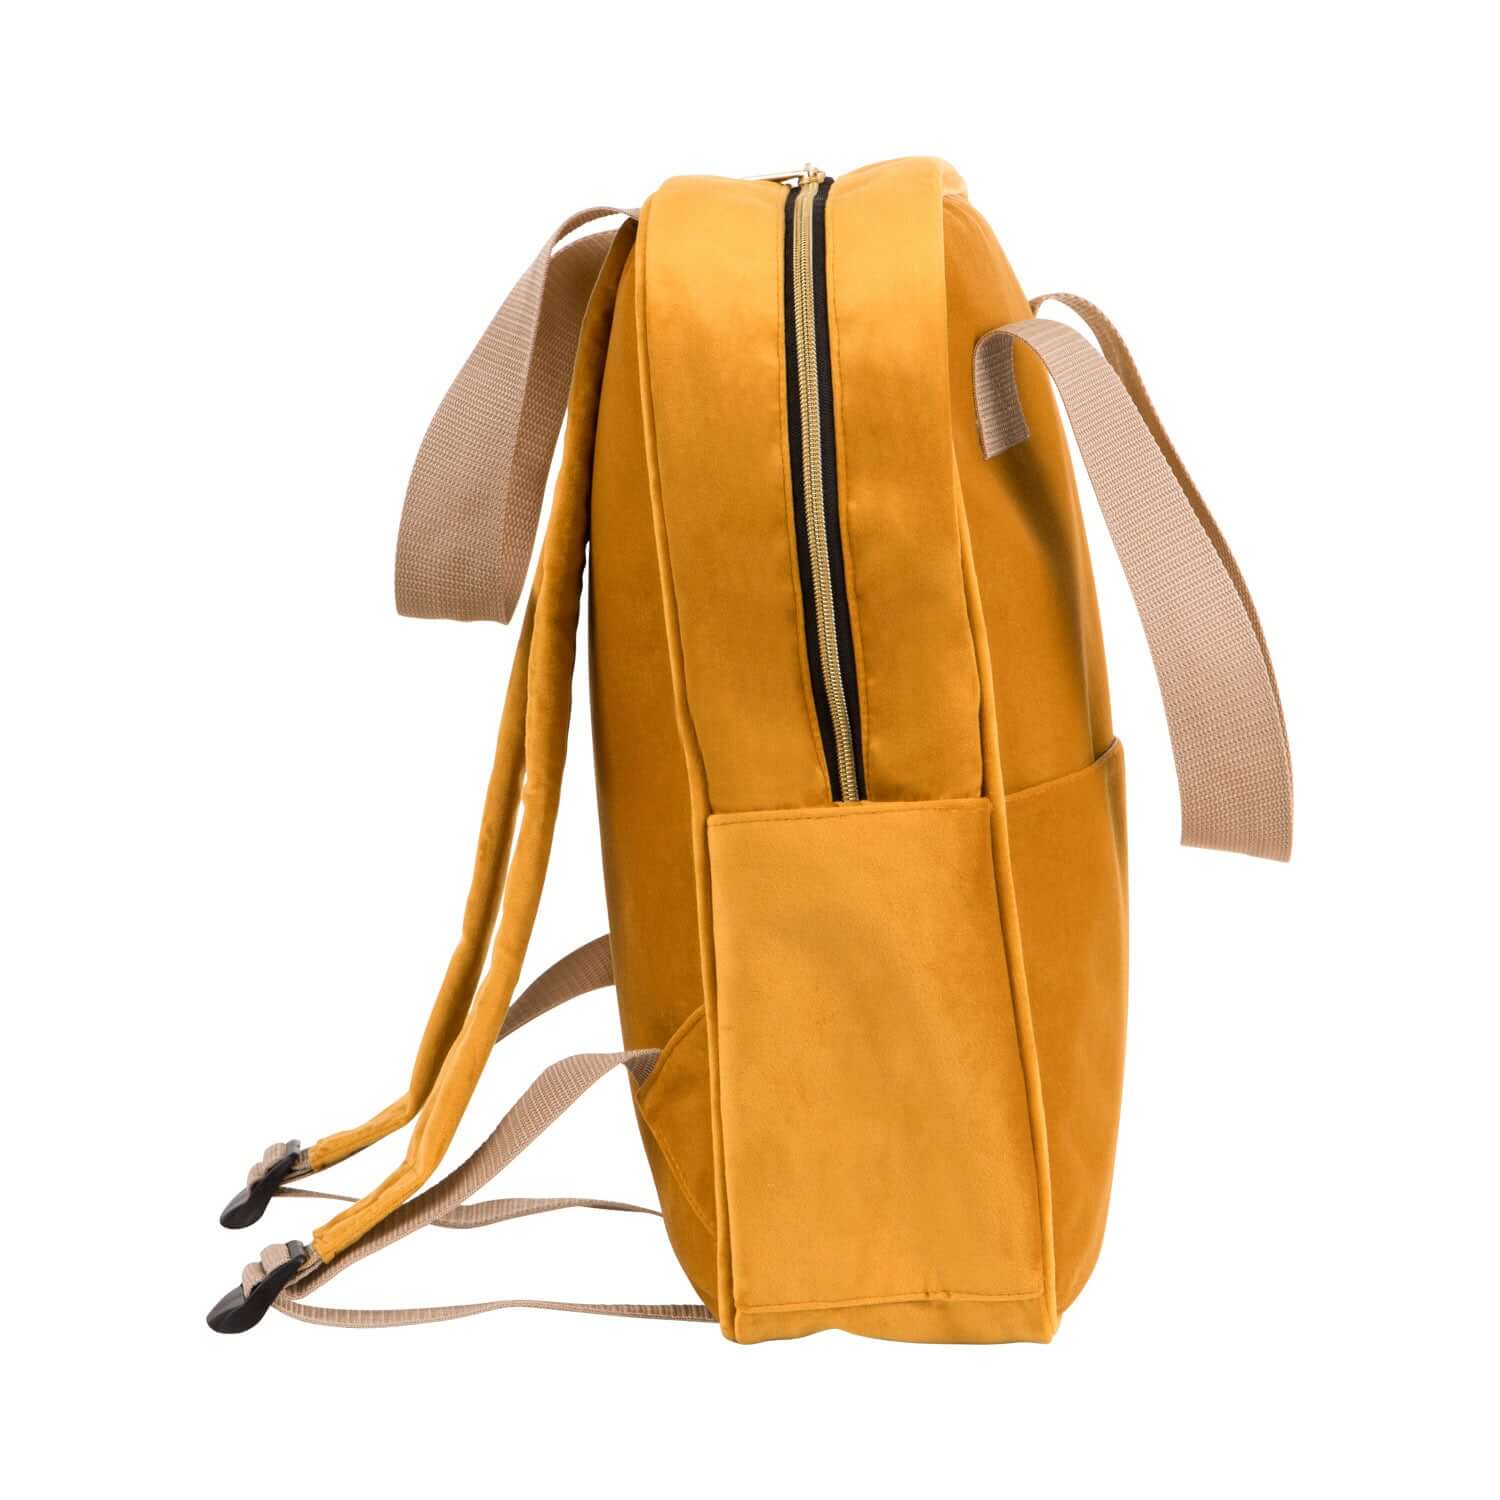 Duży żółty plecak welurowy od Bettys Home zdjęcie z boku, plecak do samolotu bagaż podręczny, pojemny plecak do samolotu